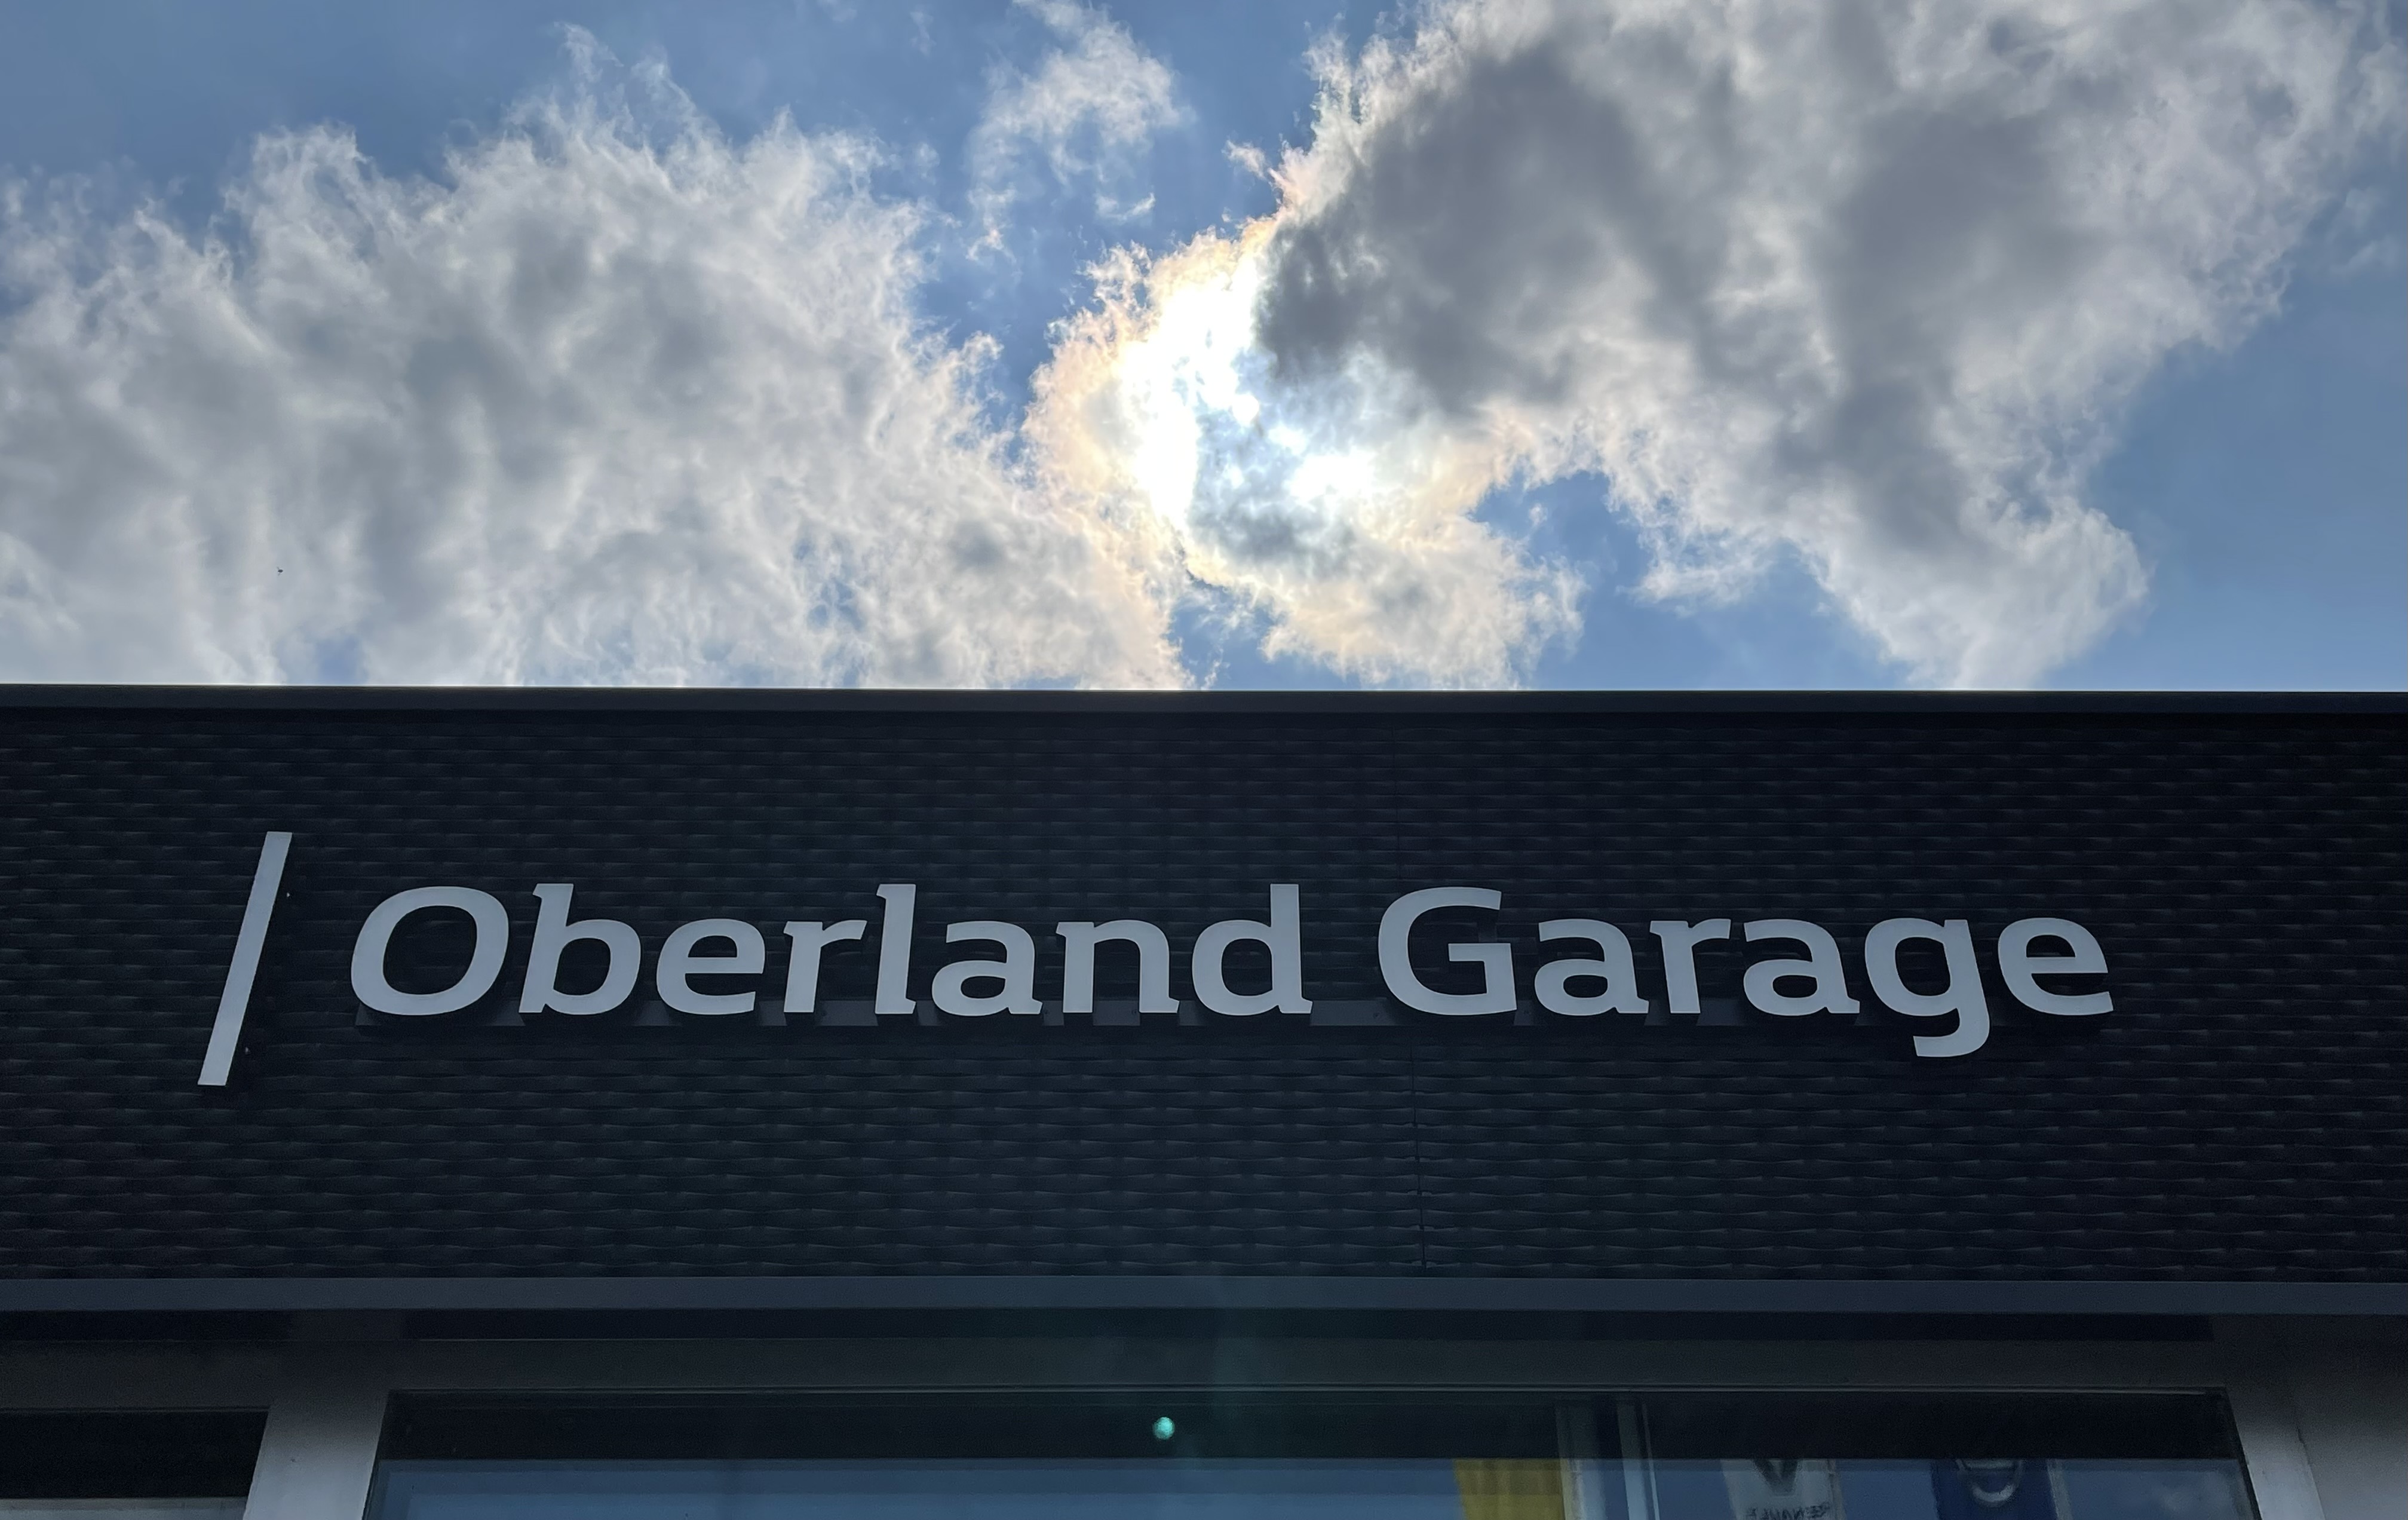 Oberland Garage Müller Uster